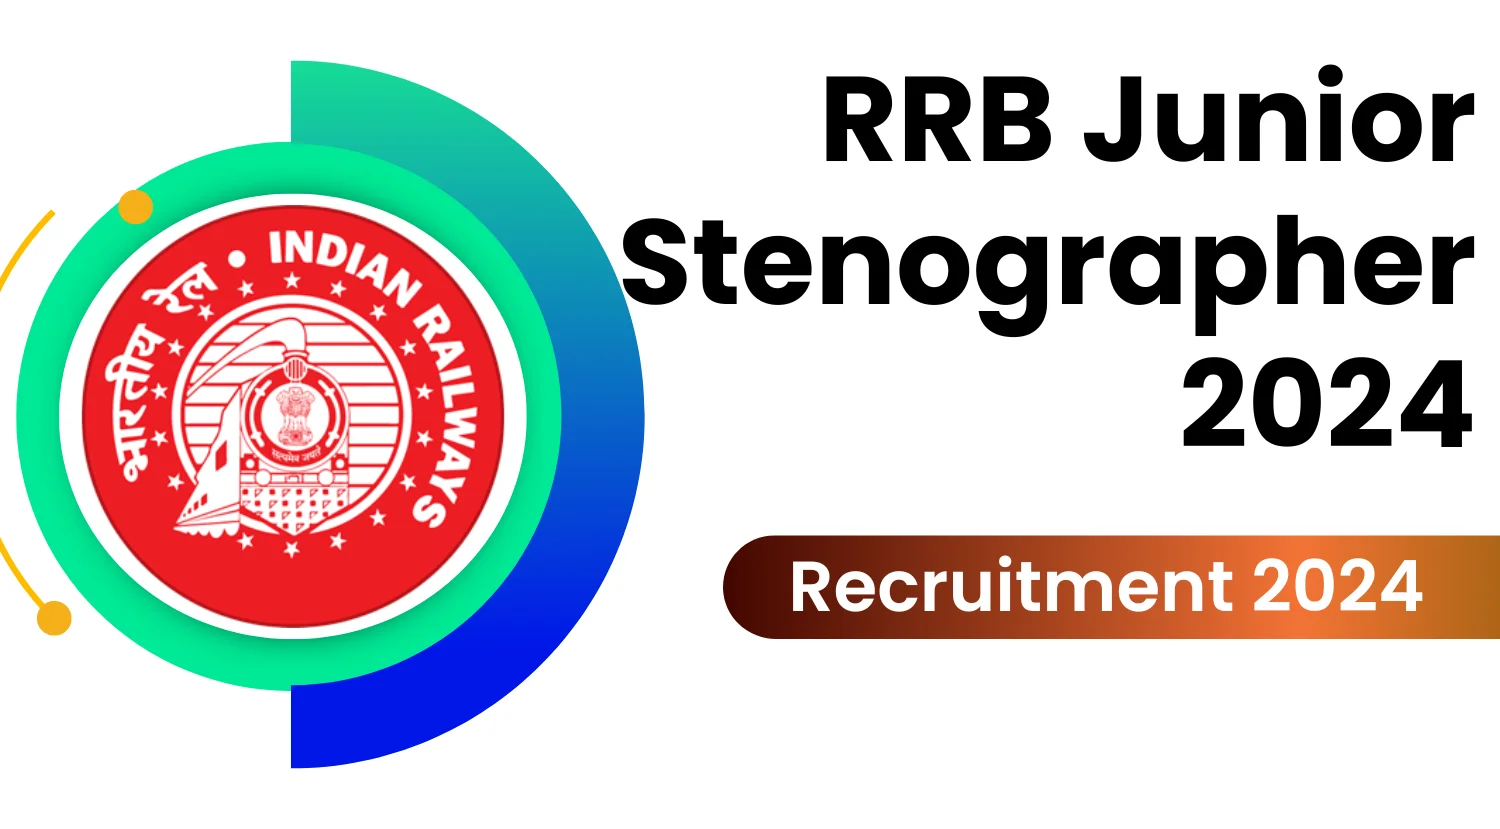 RRB Junior Stenographer 2024